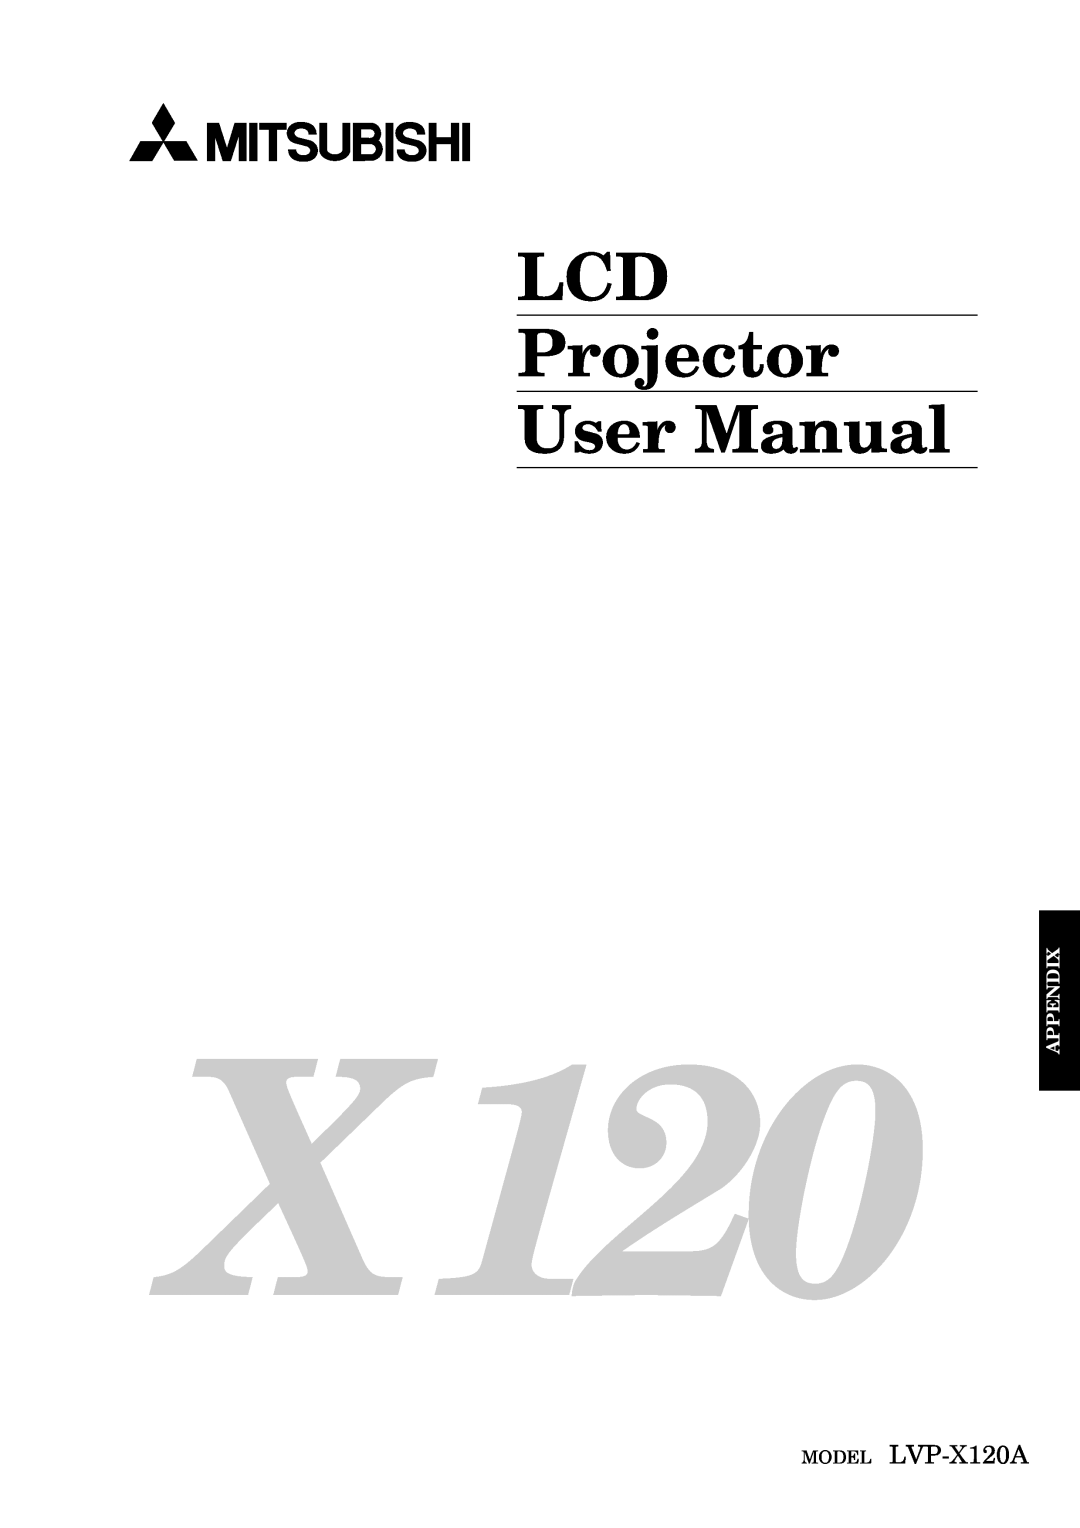 Mitsubishi Electronics user manual LCD Projector User Manual, MODEL LVP-X120A, Appendix 